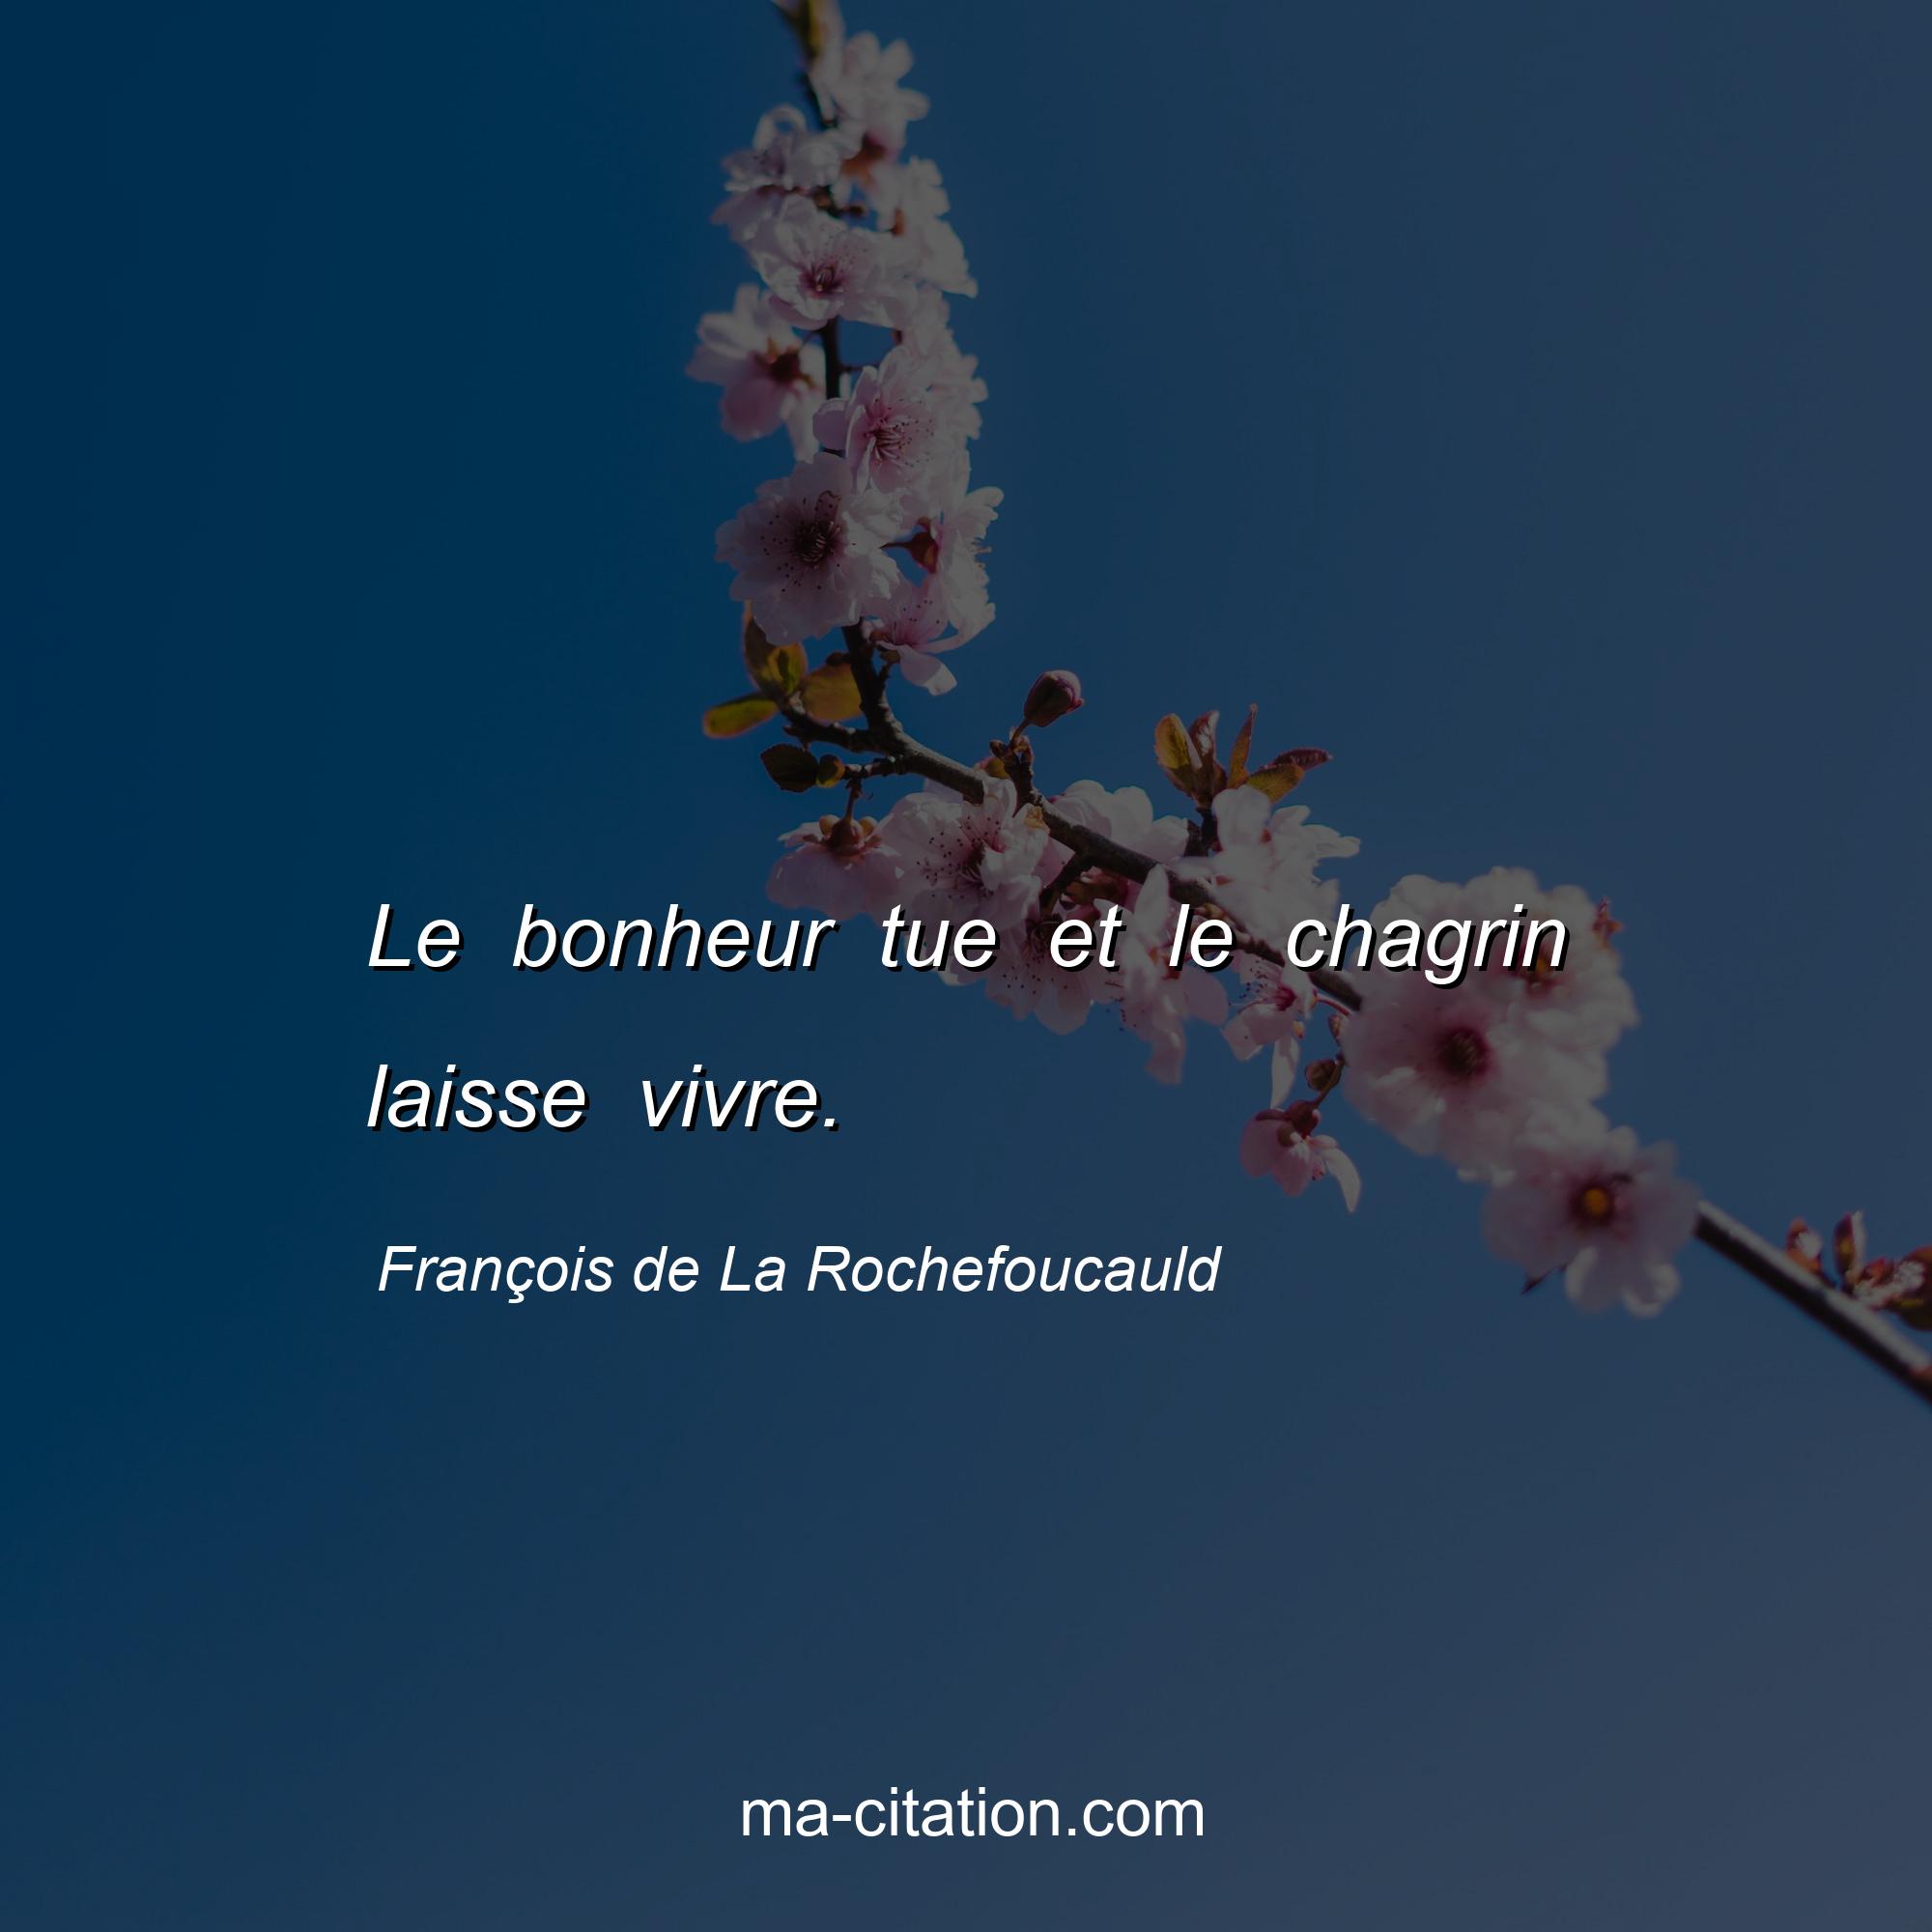 François de La Rochefoucauld : Le bonheur tue et le chagrin laisse vivre.